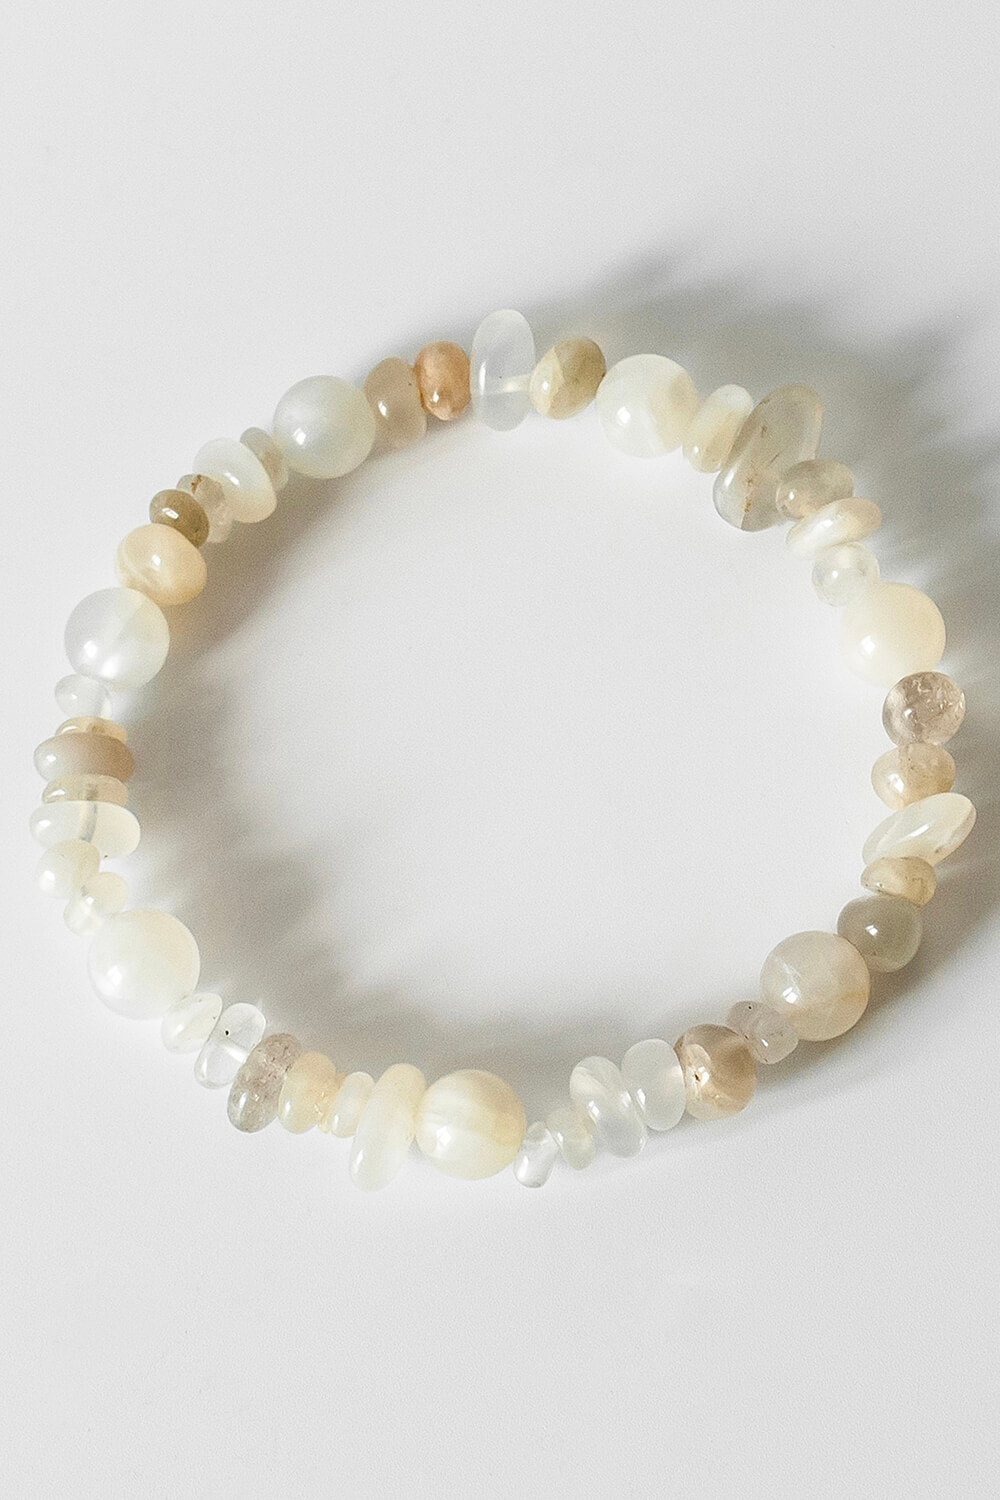 White Moonstone Gemstone Bracelet, Image 2 of 2